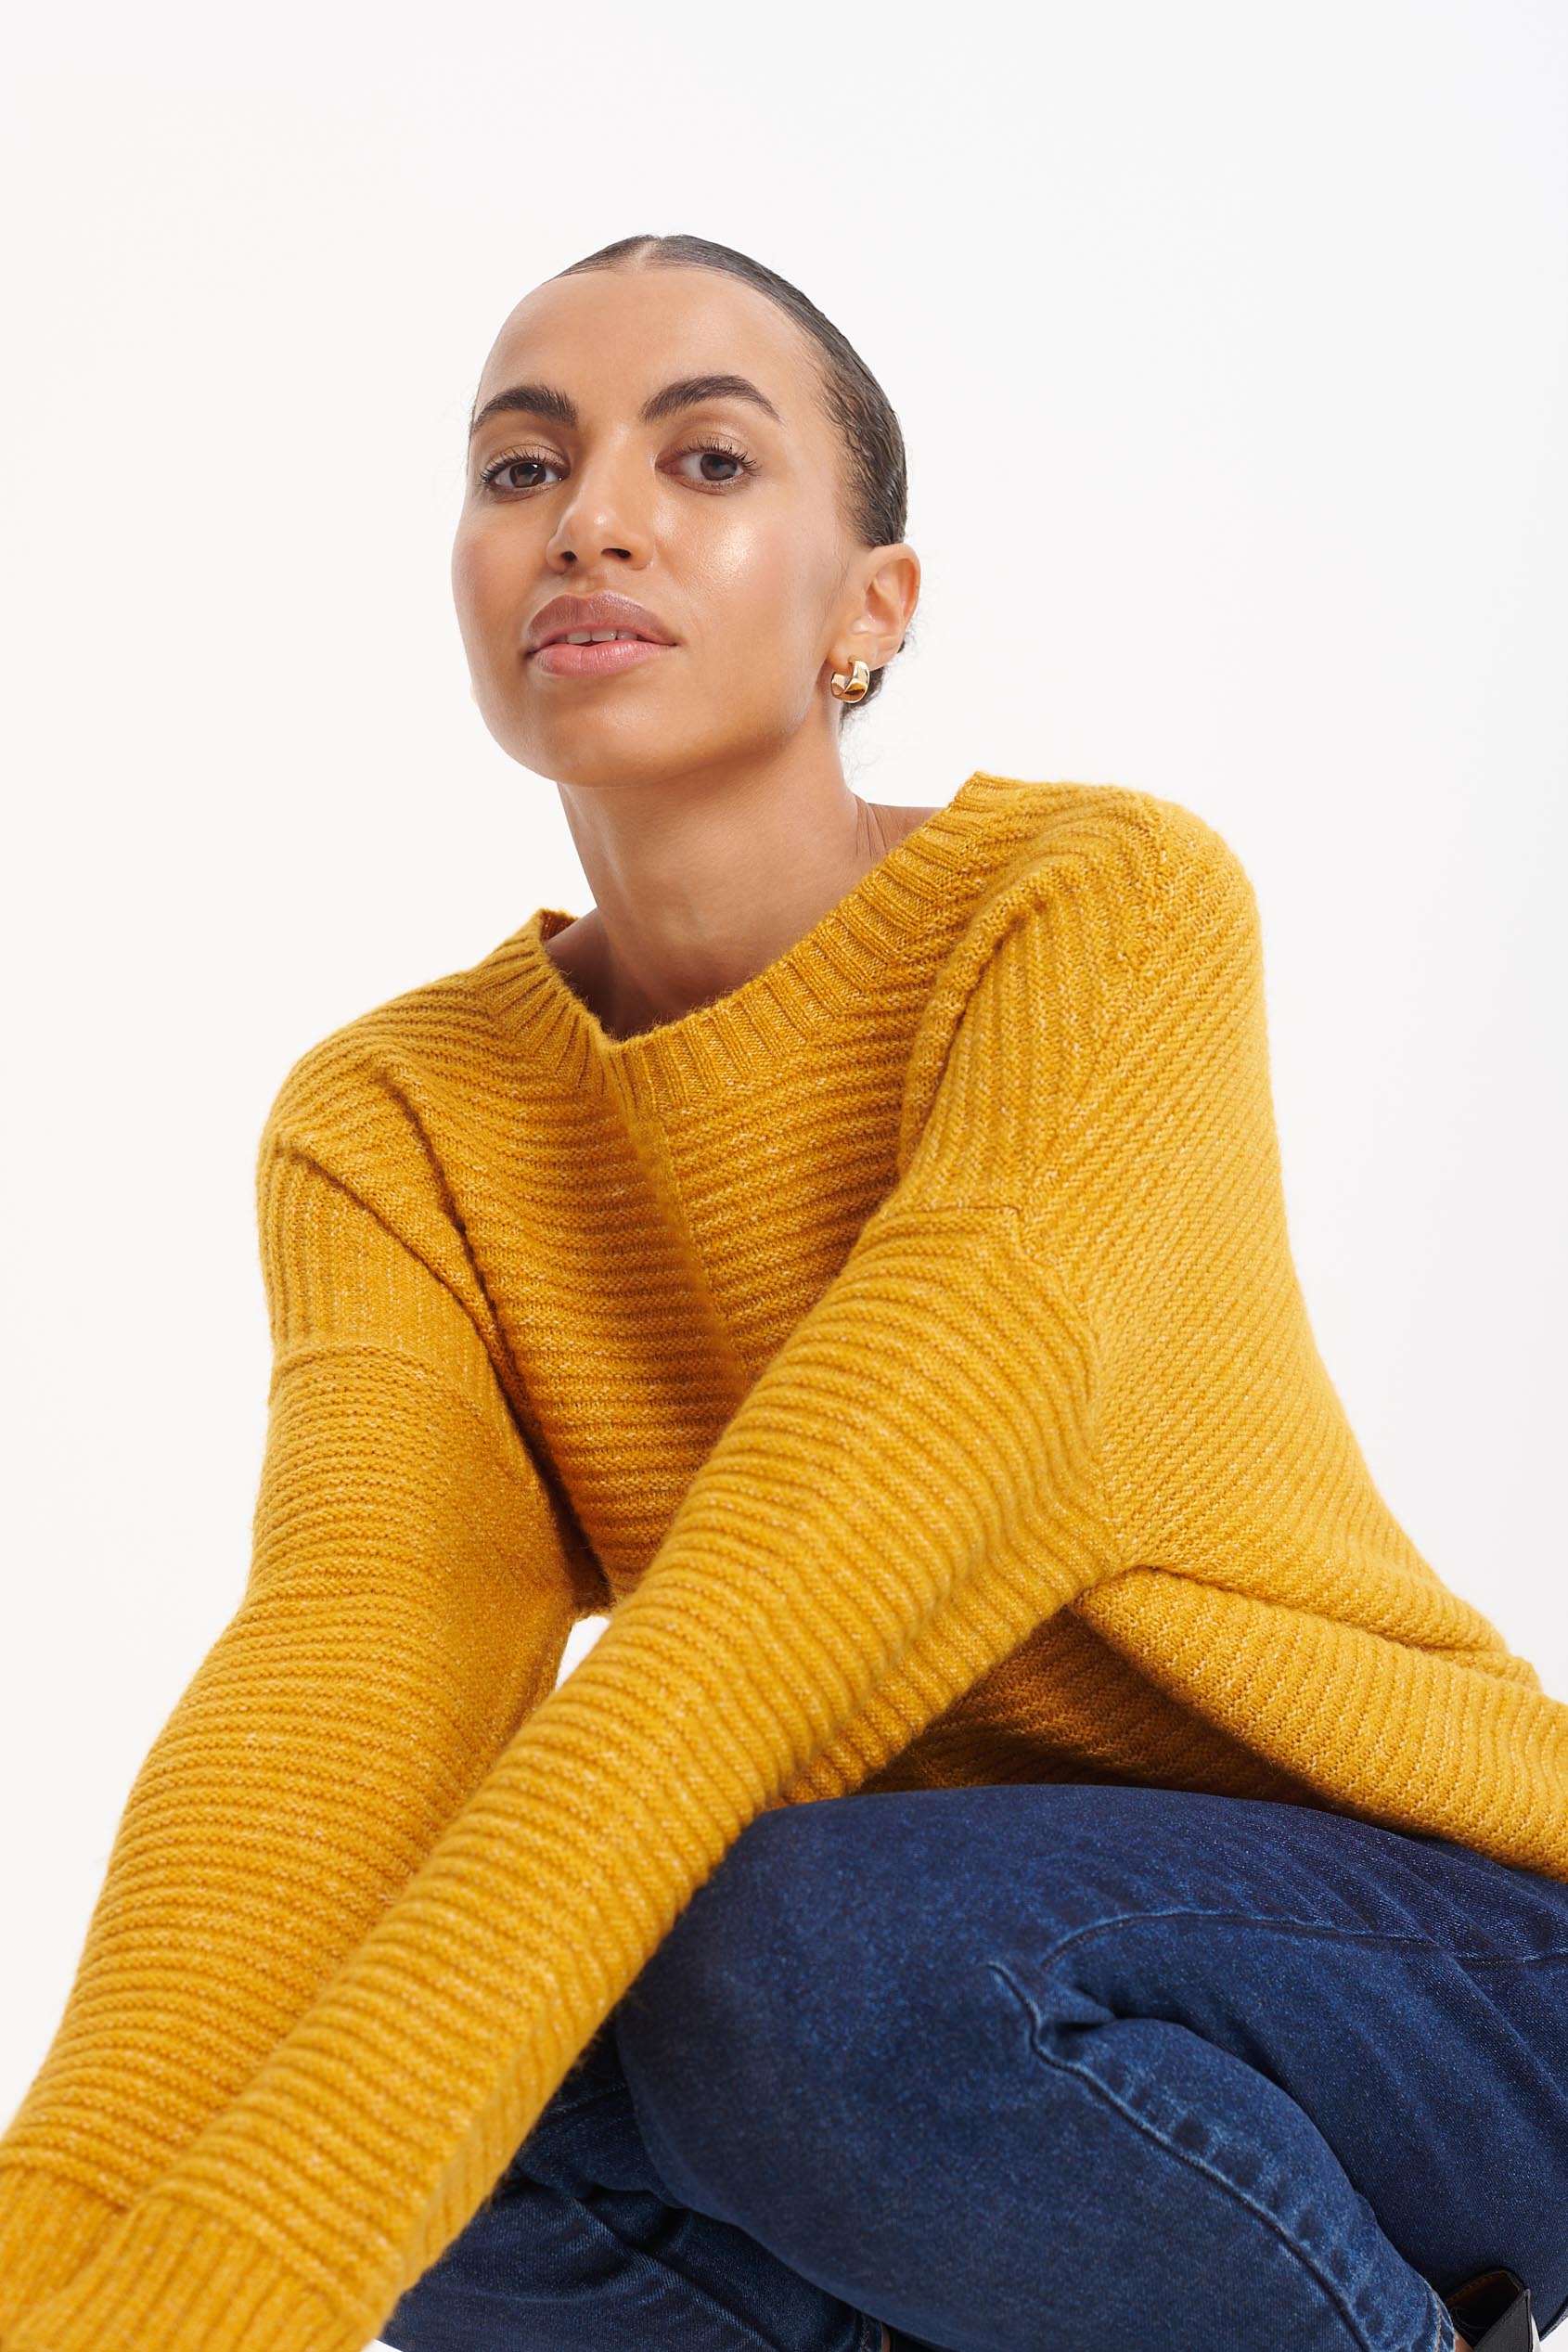 Stylowy sweter w musztardowym kolorze